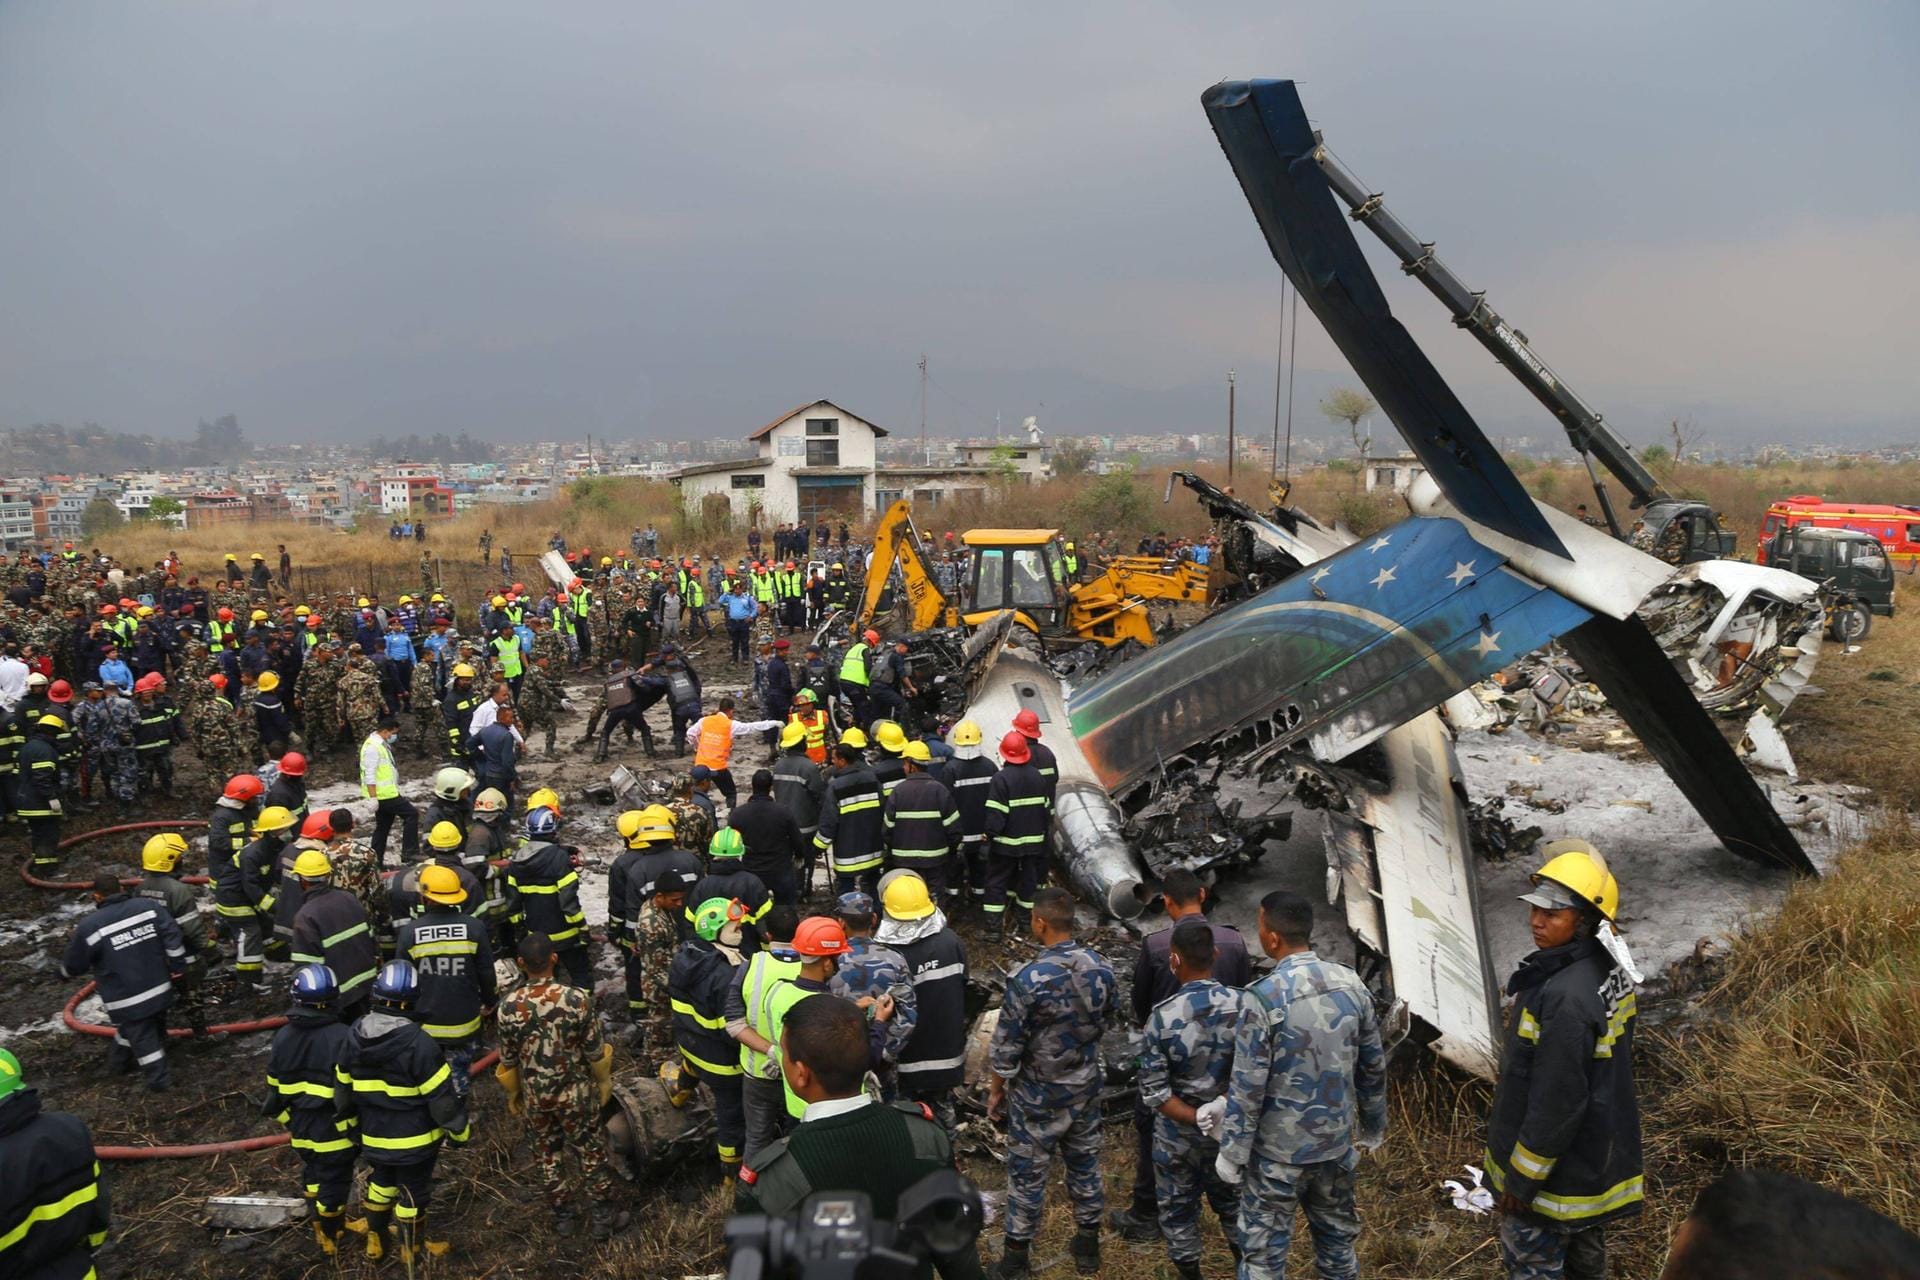 Nepal, März 2018: Eine Passagiermaschine verunglückt beim Anflug auf den Flughafen von Kathmandu. Mindestens 49 Menschen sterben. 22 Verletzte können aus den Trümmern gerettet werden.